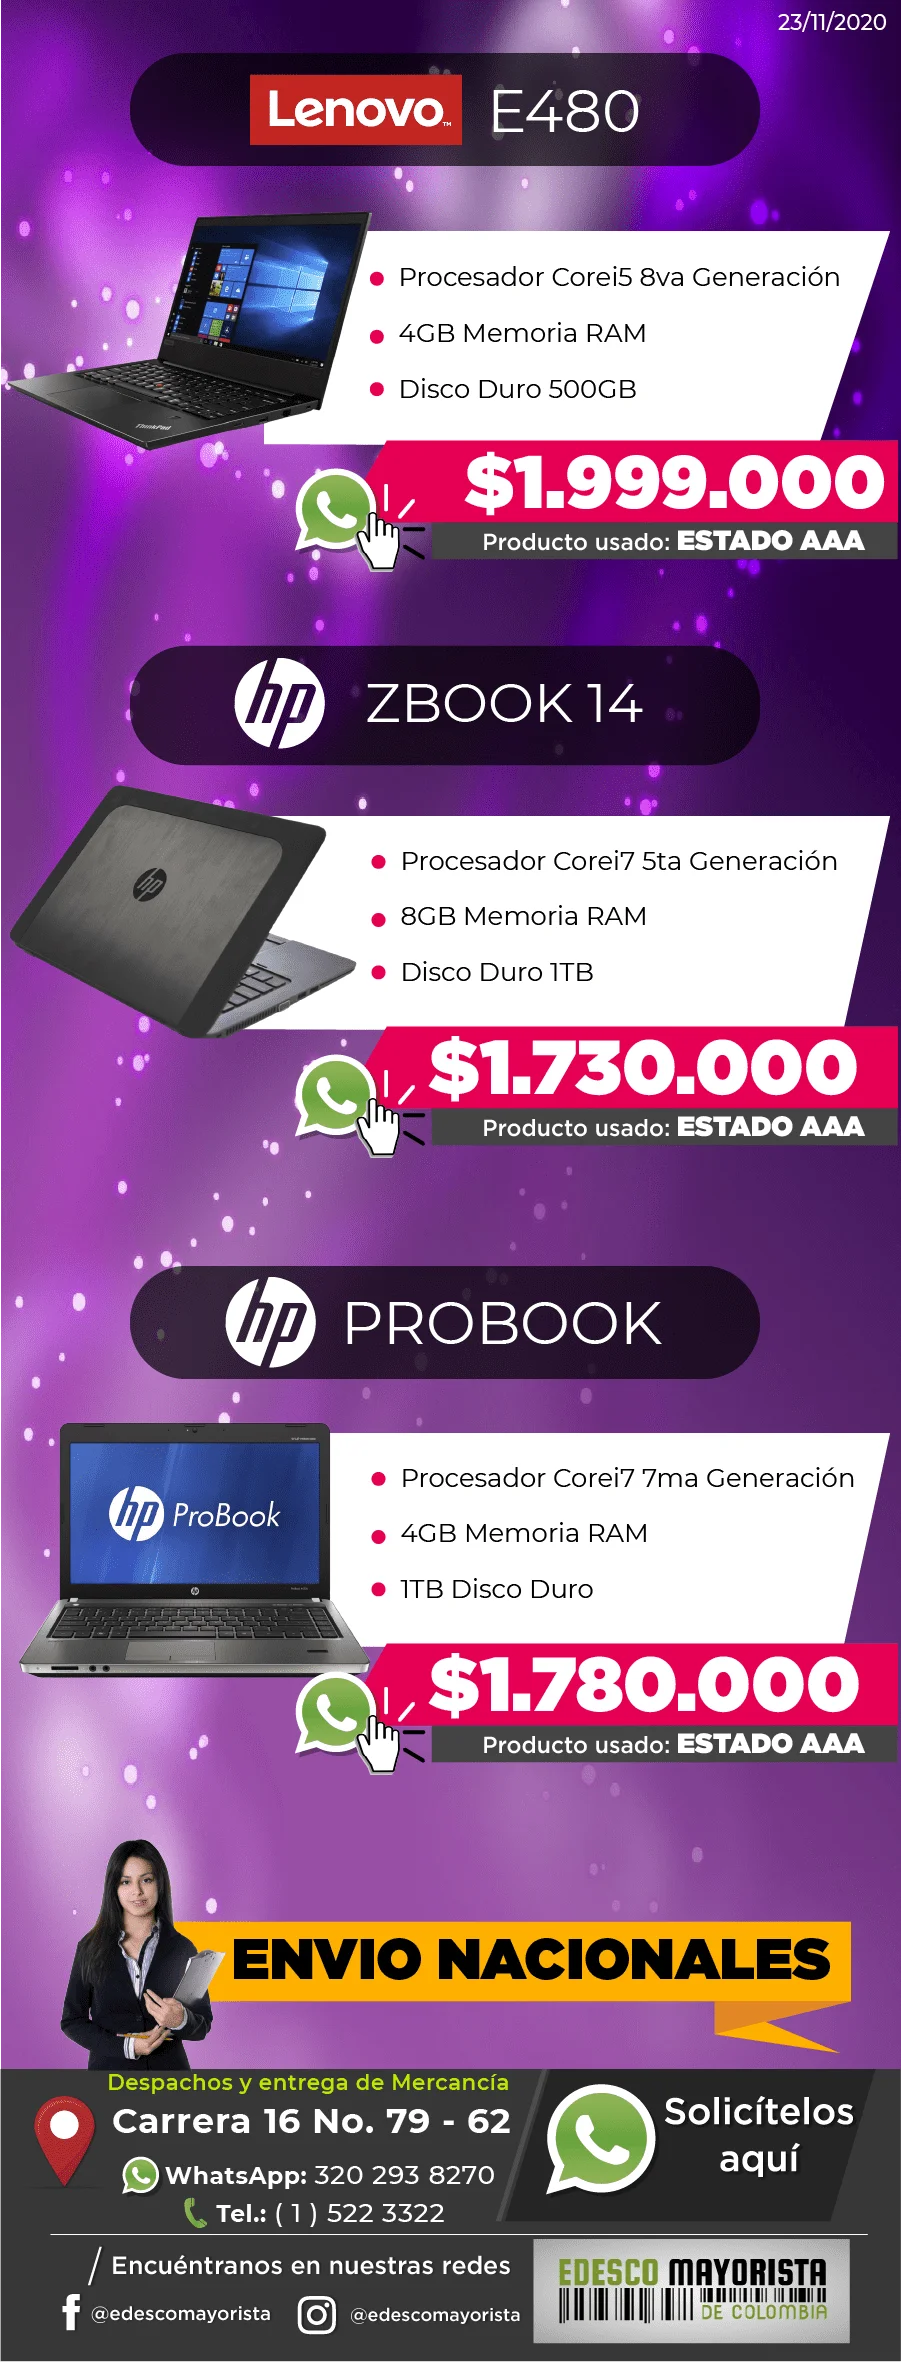 Portátil HP Probook i7 7th